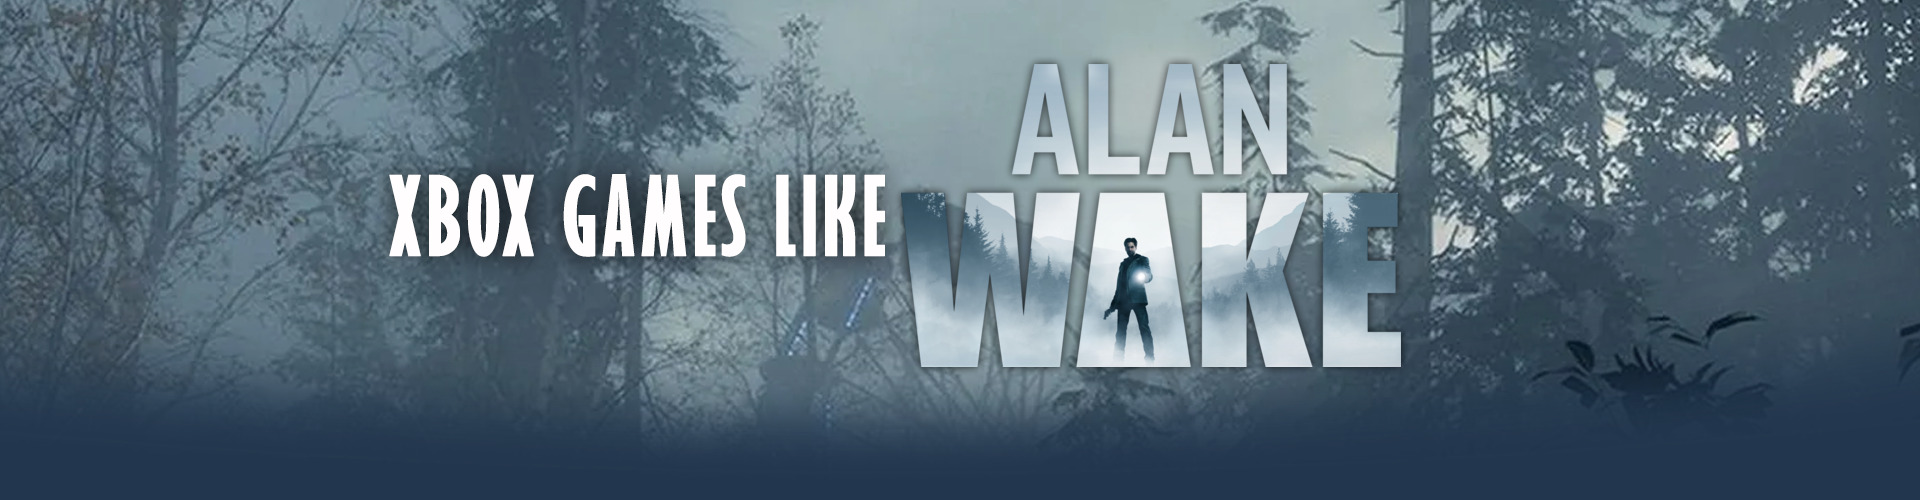 Xbox-spellen zoals Alan Wake